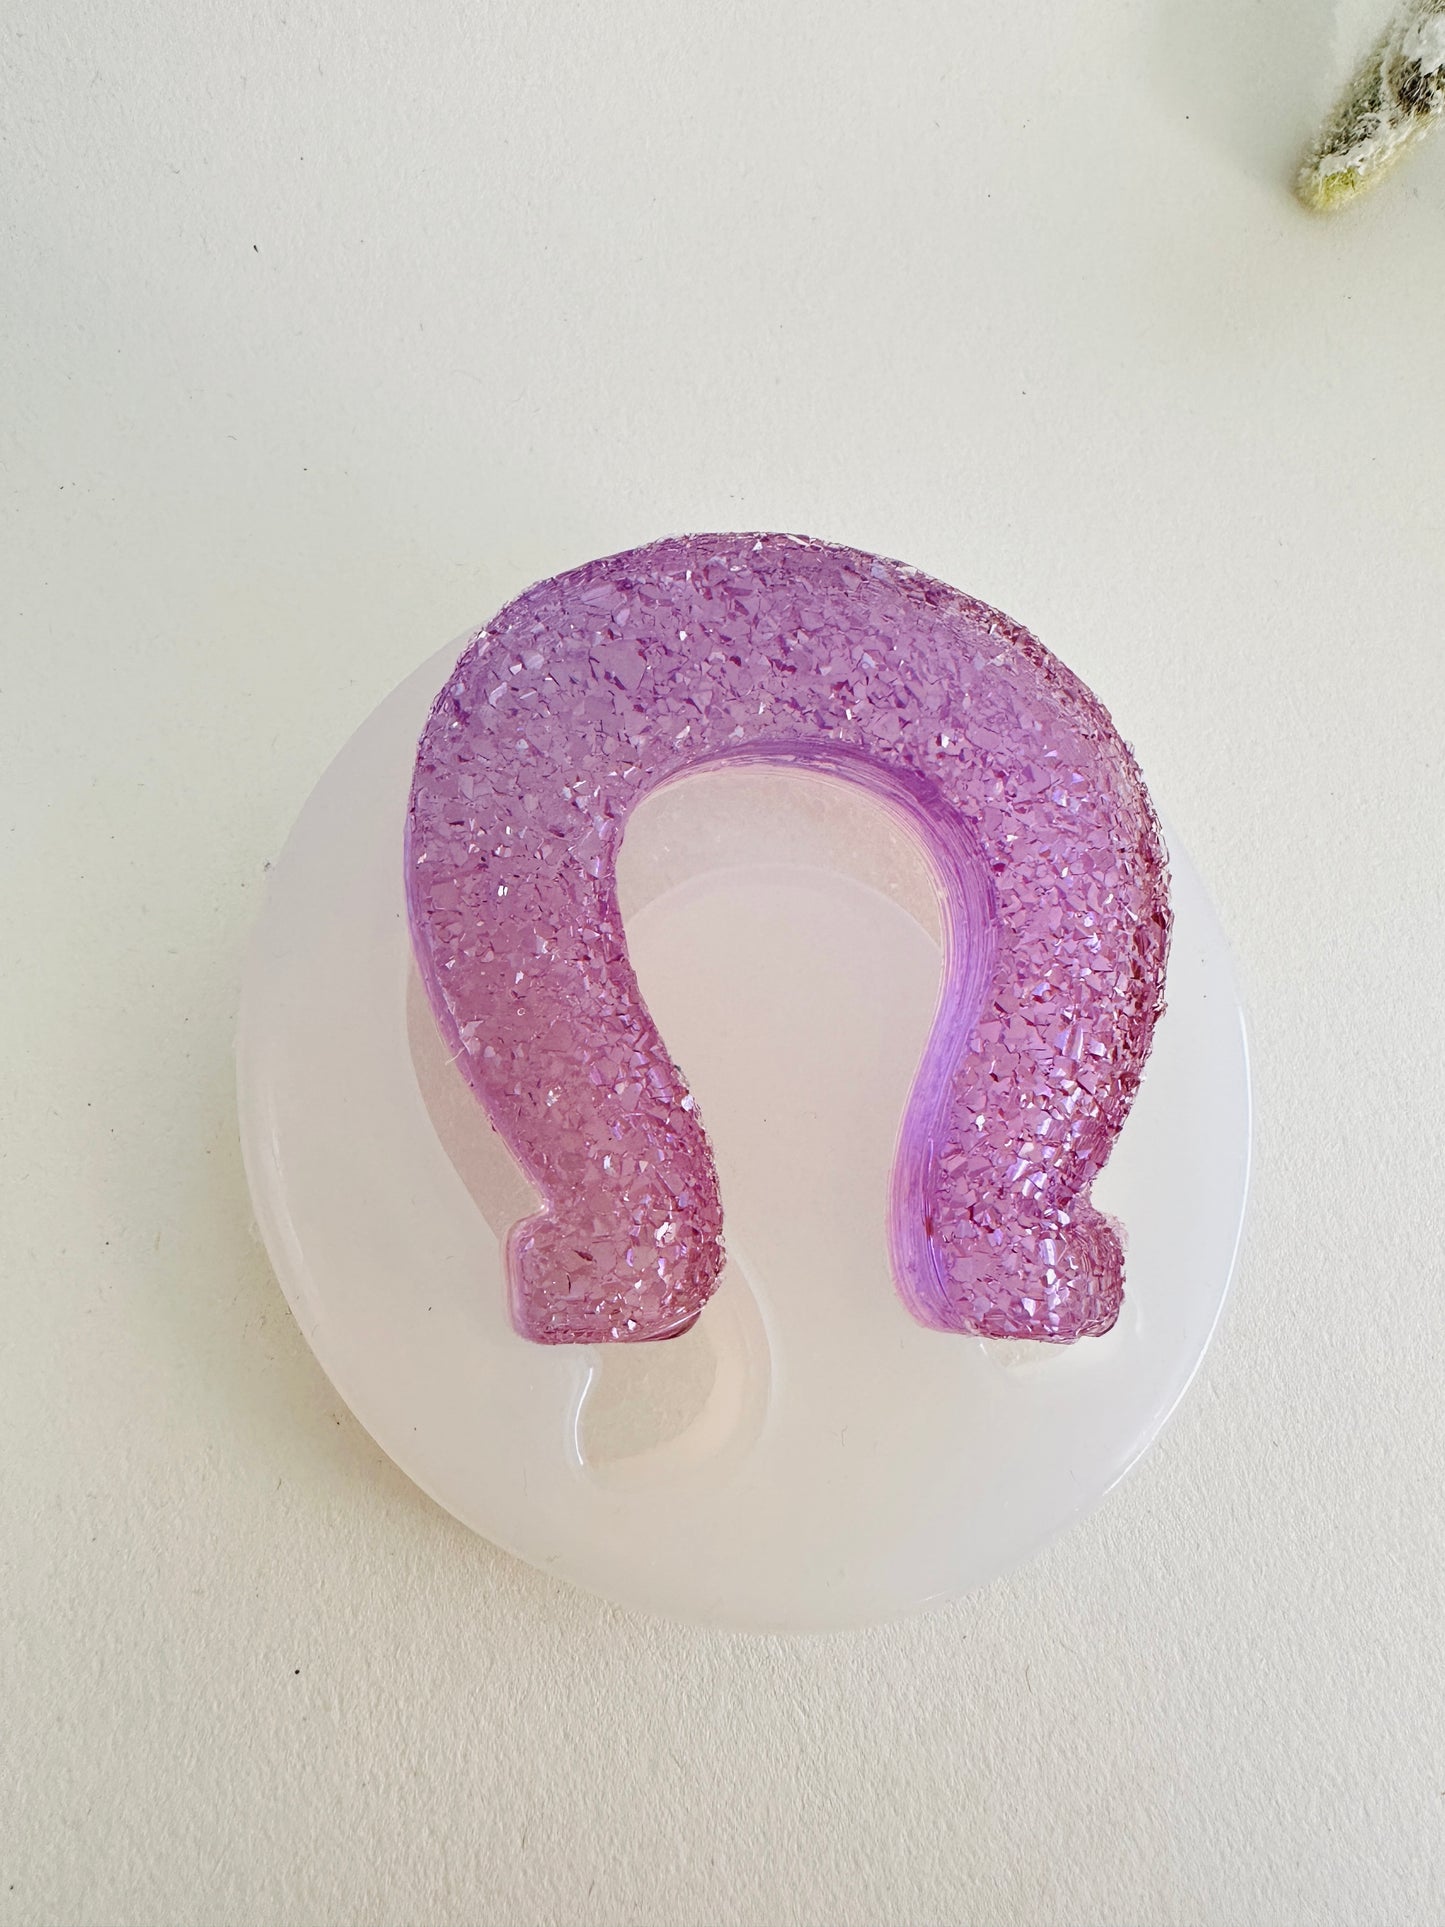 Hufeisen mit Kristallen Harz-Silikonform – funkelndes DIY-Bastelwerkzeug – perfekt für die Schmuckherstellung – einzigartiges Geschenk für Bastelliebhaber